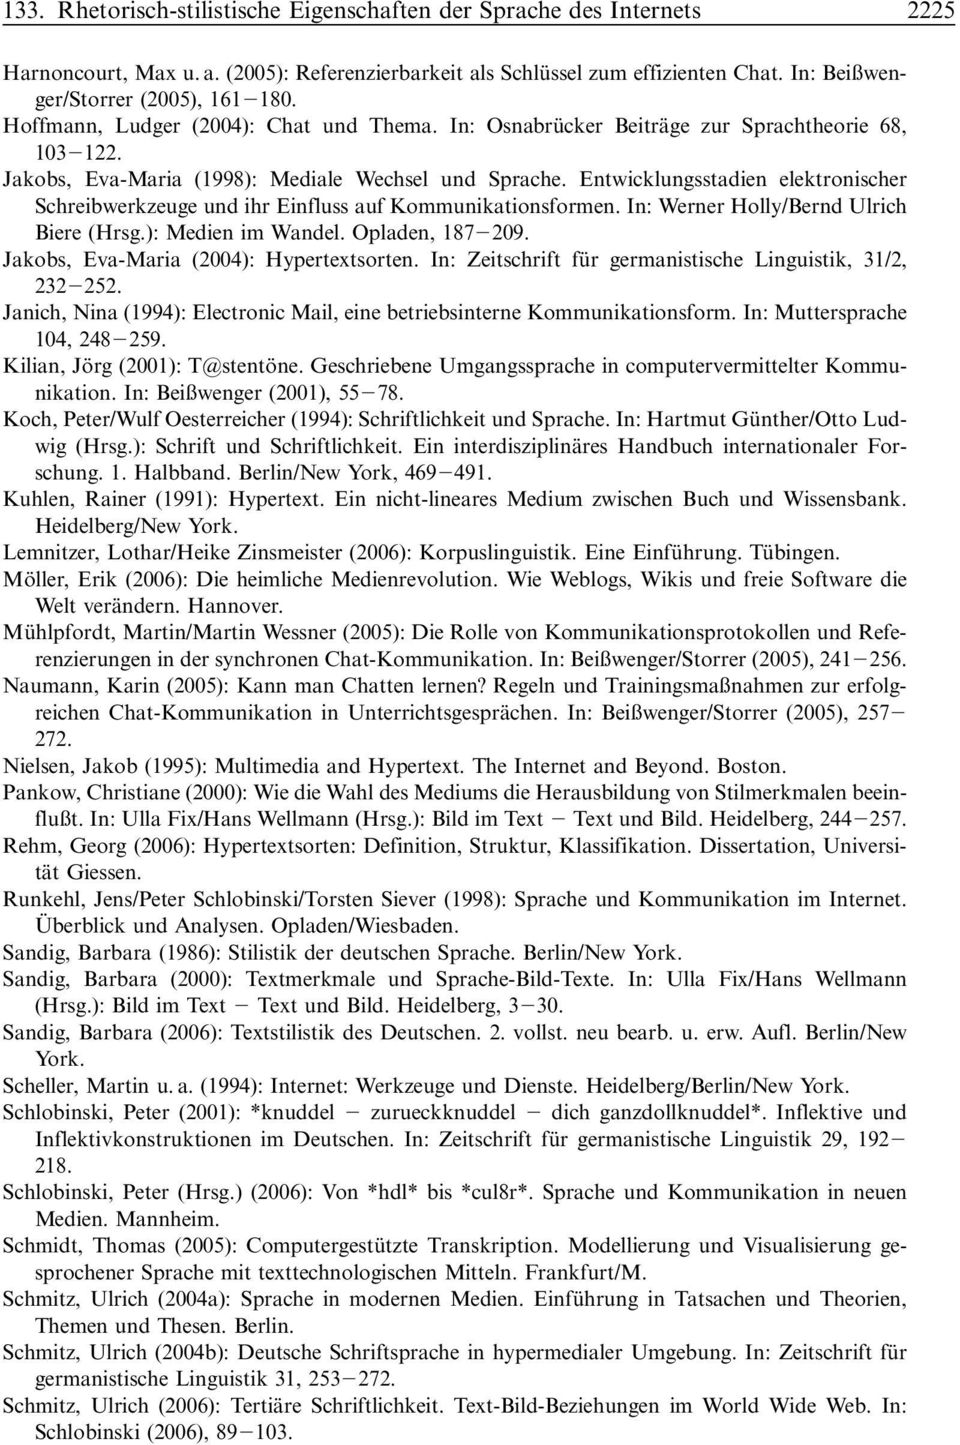 Entwicklungsstadien elektronischer Schreibwerkzeuge und ihr Einfluss auf Kommunikationsformen. In: Werner Holly/Bernd Ulrich Biere (Hrsg.): Medien im Wandel. Opladen, 187 209.